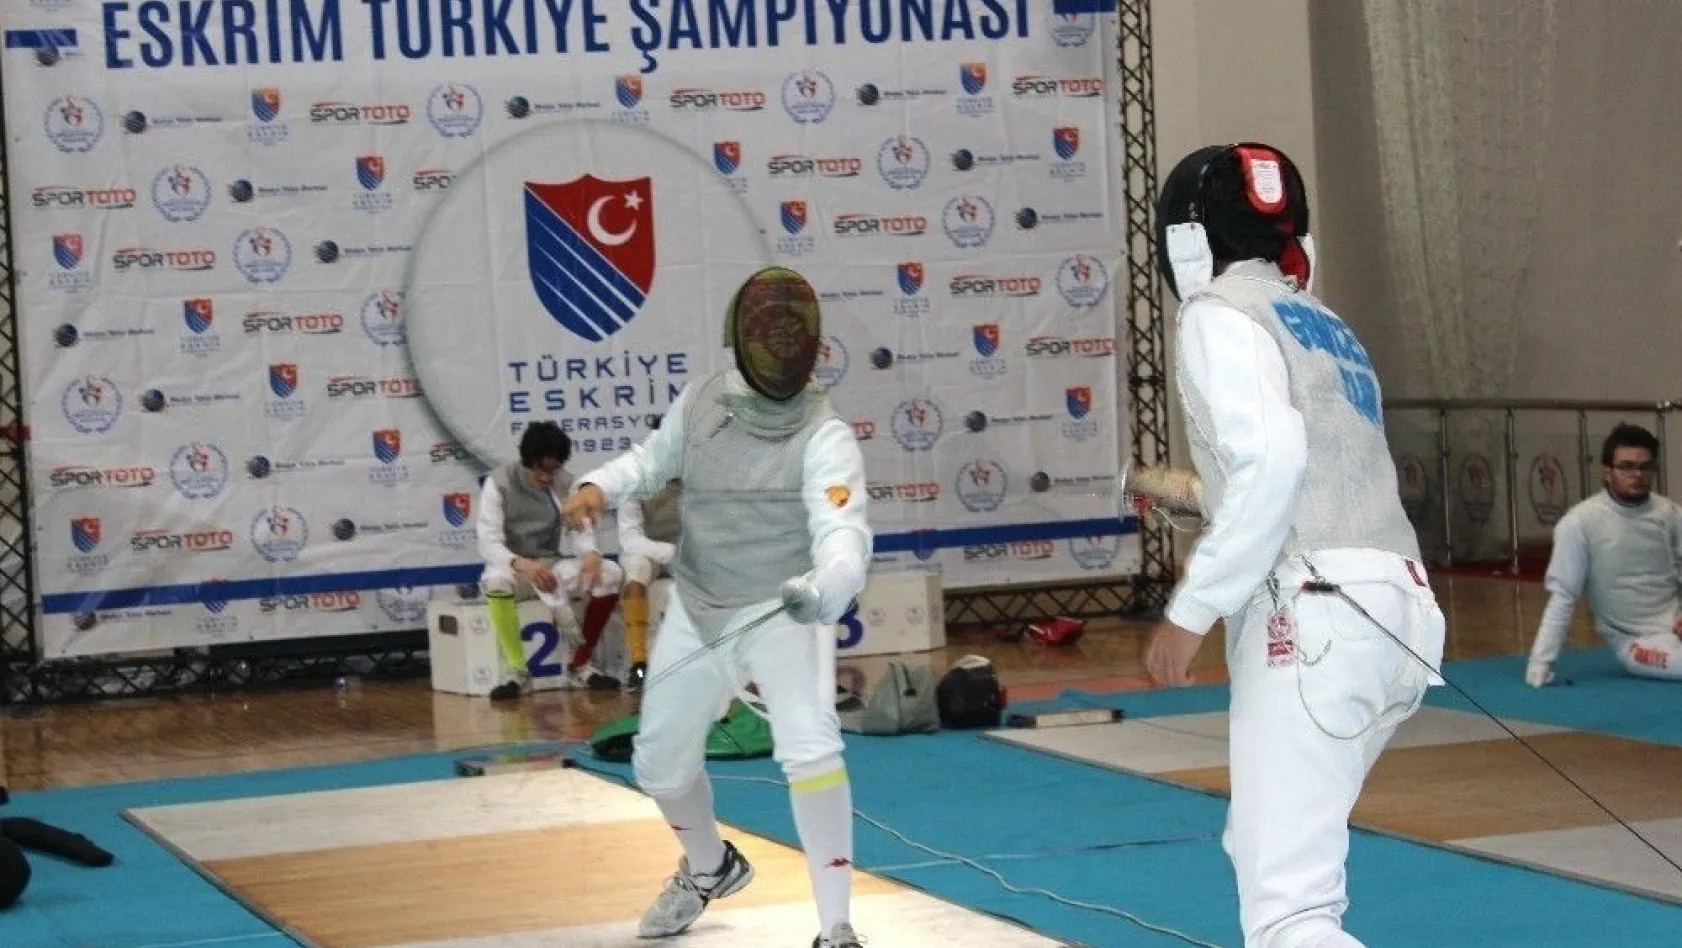 Eskrim Türkiye Şampiyonası Adıyaman'da düzenleniyor
